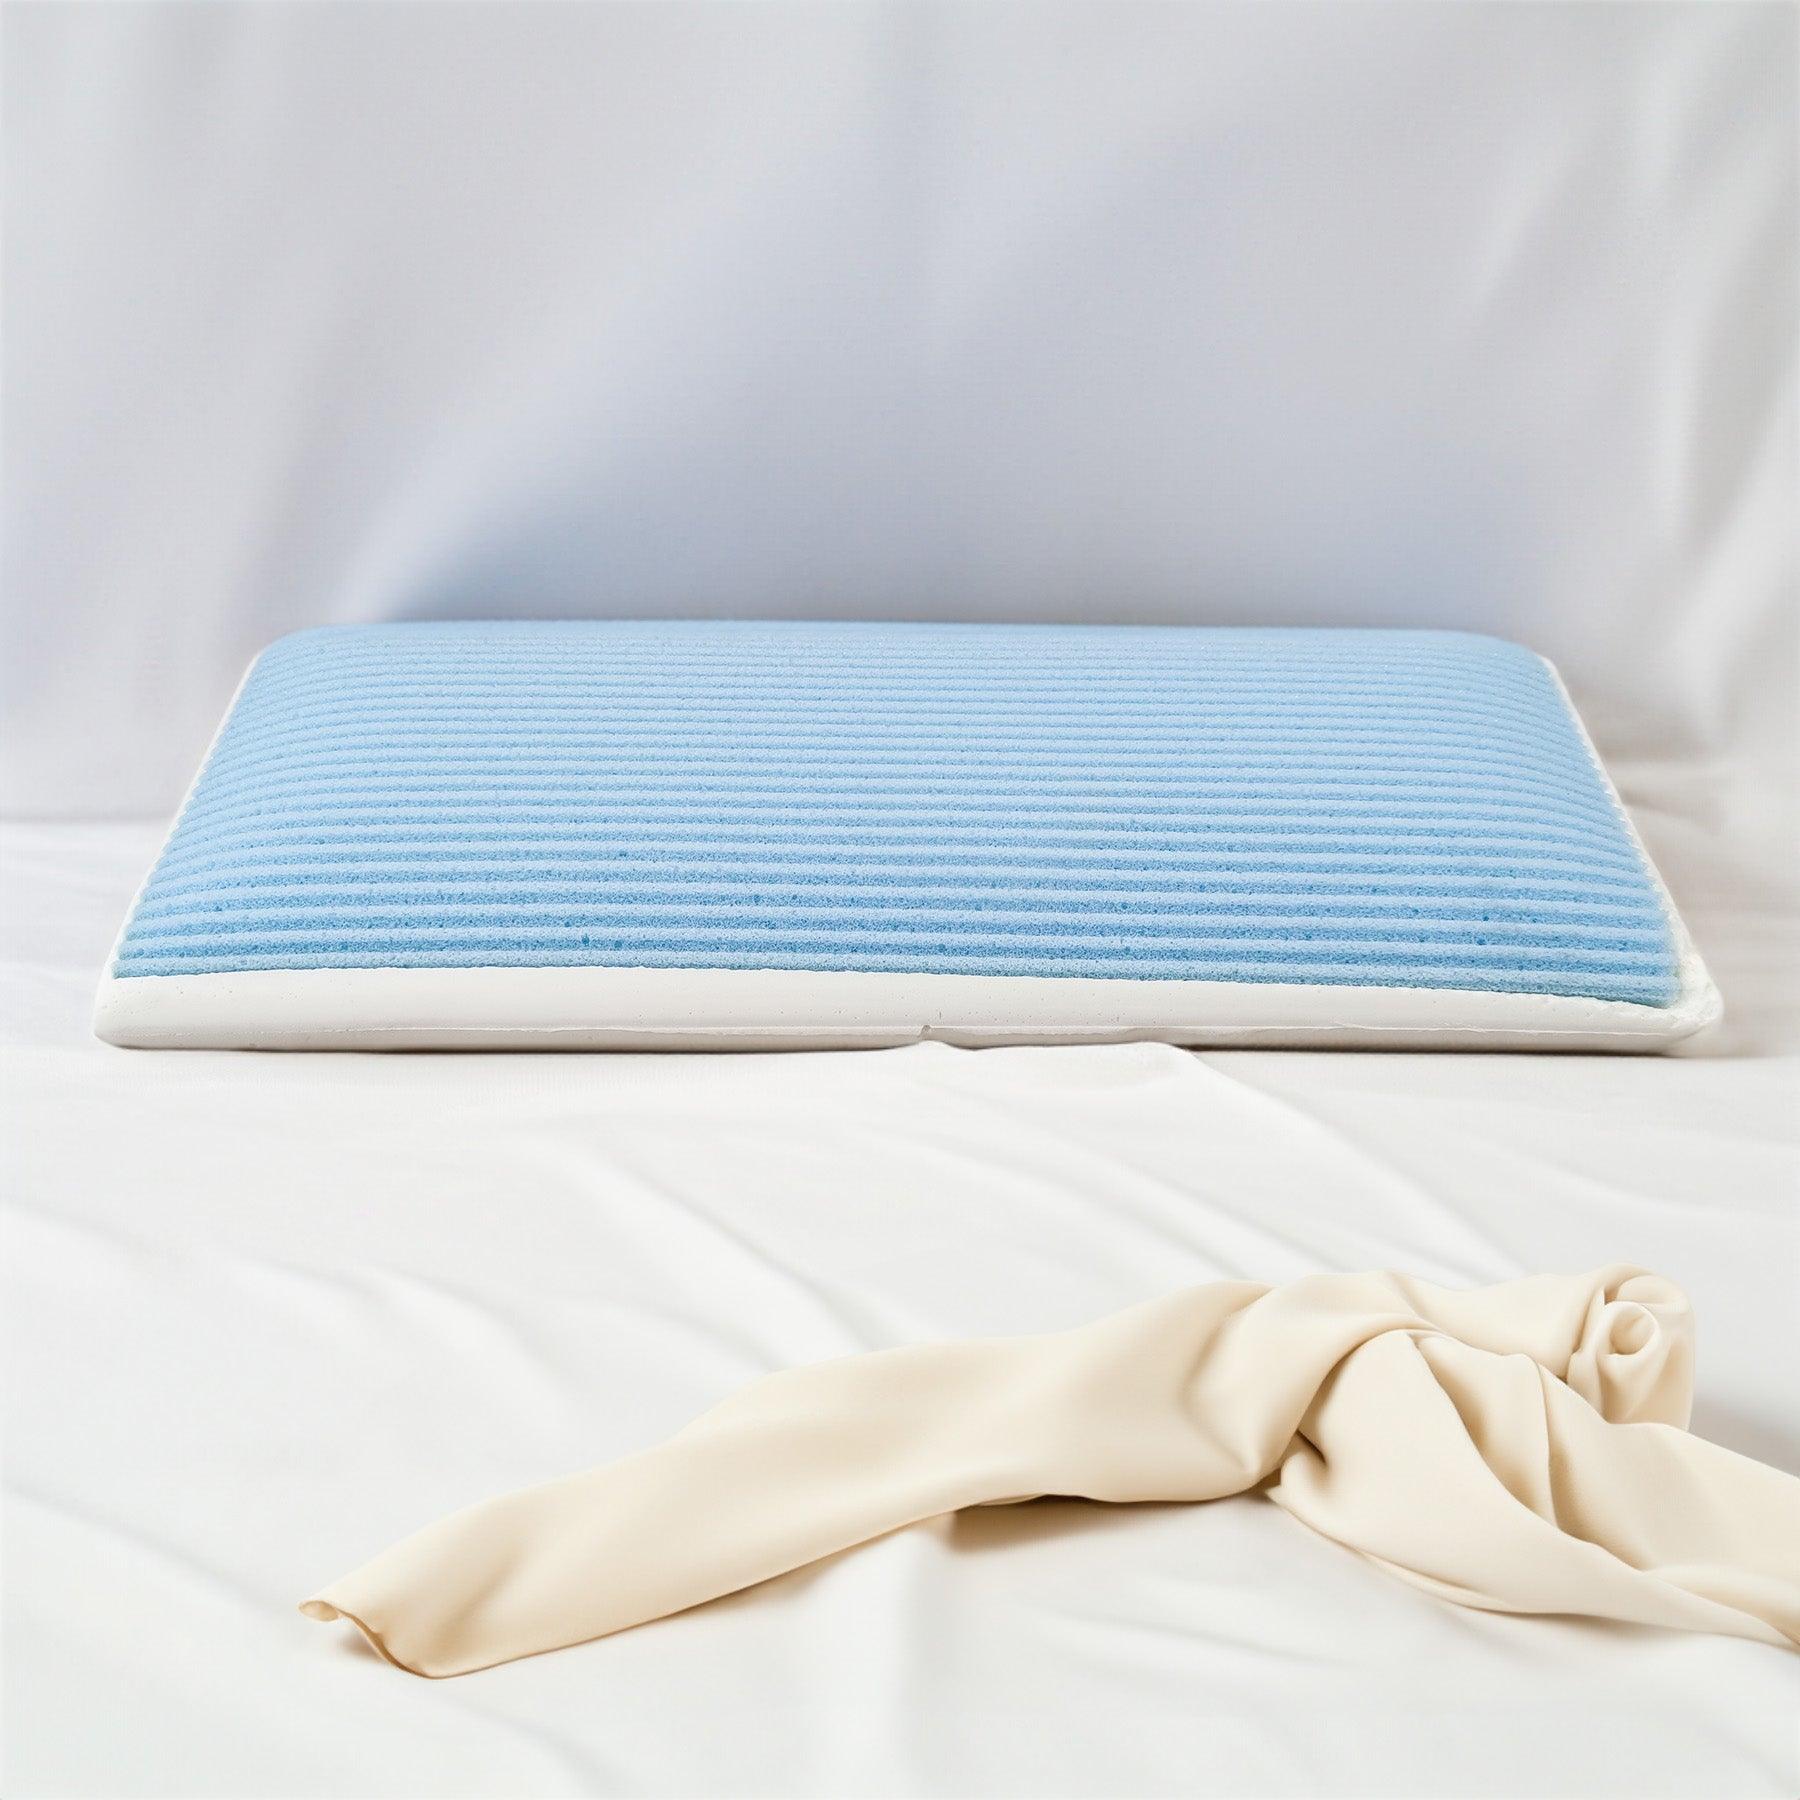 Cuscino LIGNANO LIGHT Memory Foam e Watergel® traspirante - Comfort e freschezza per un riposo ottimale su Beliamo.com